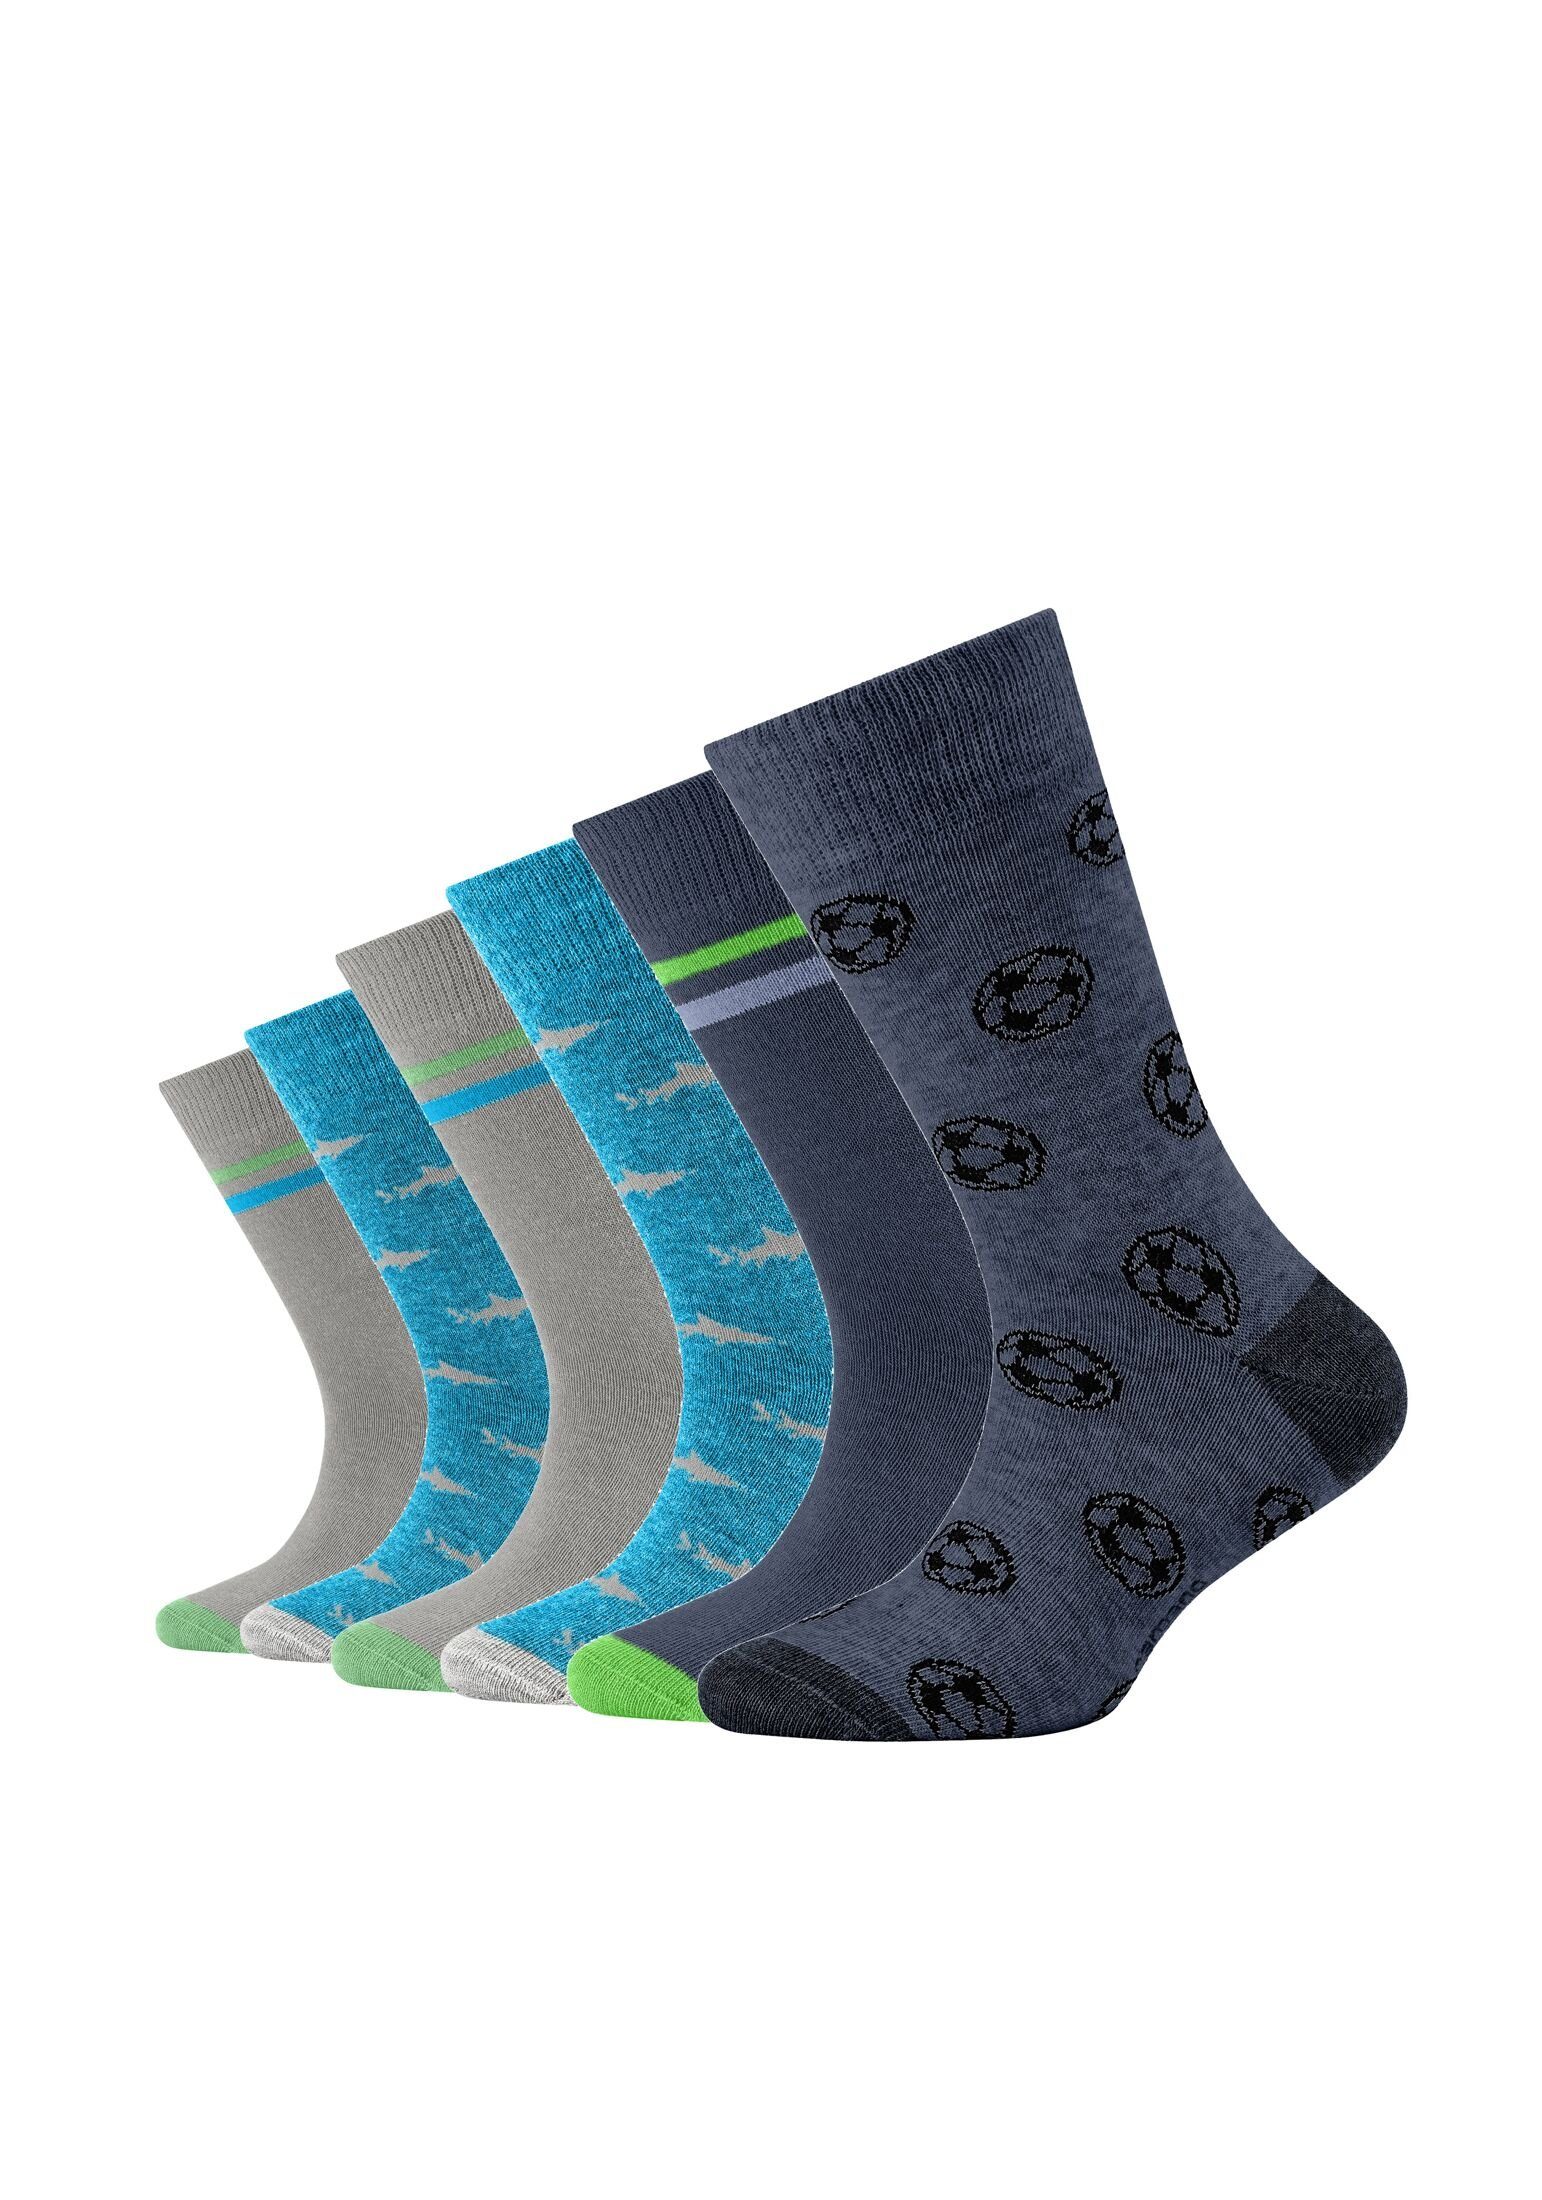 Camano 6er Pack Socken turquoise Socken